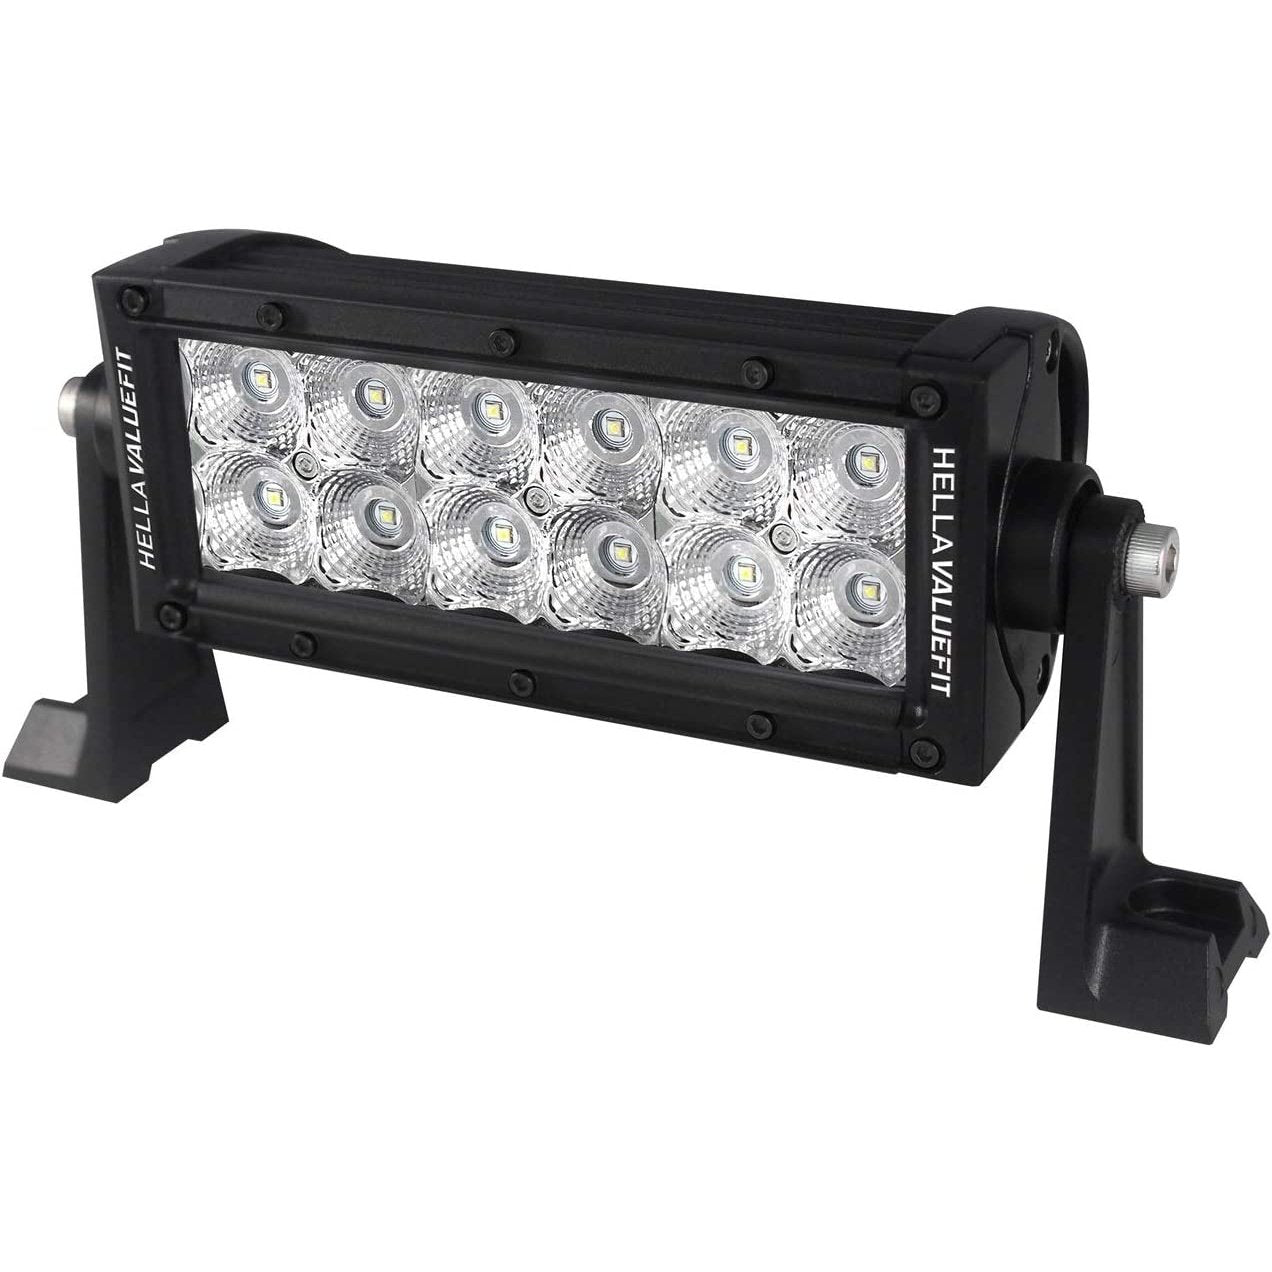 Value Fit Sport Series 12 LED Flood Light Bar - 8" - Black